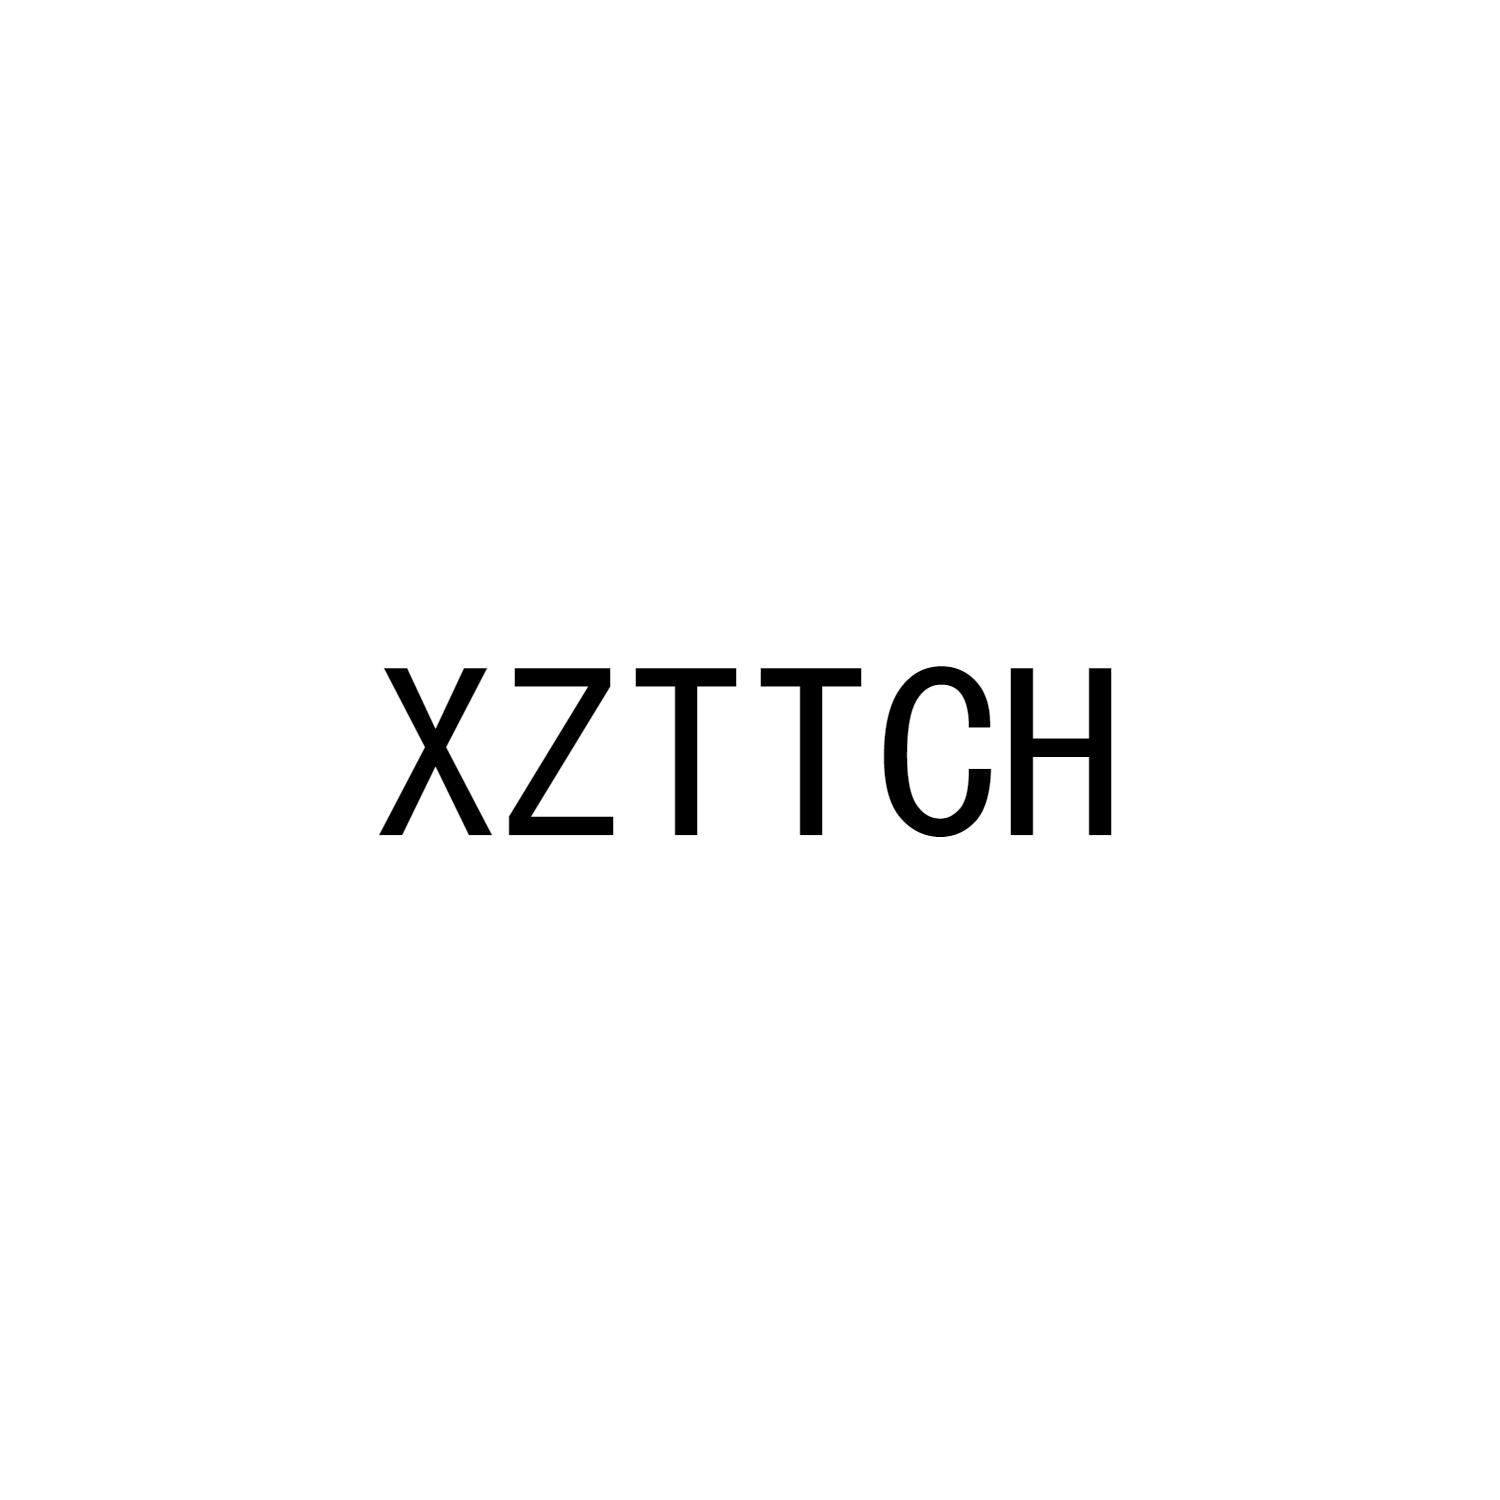 XZTTCH